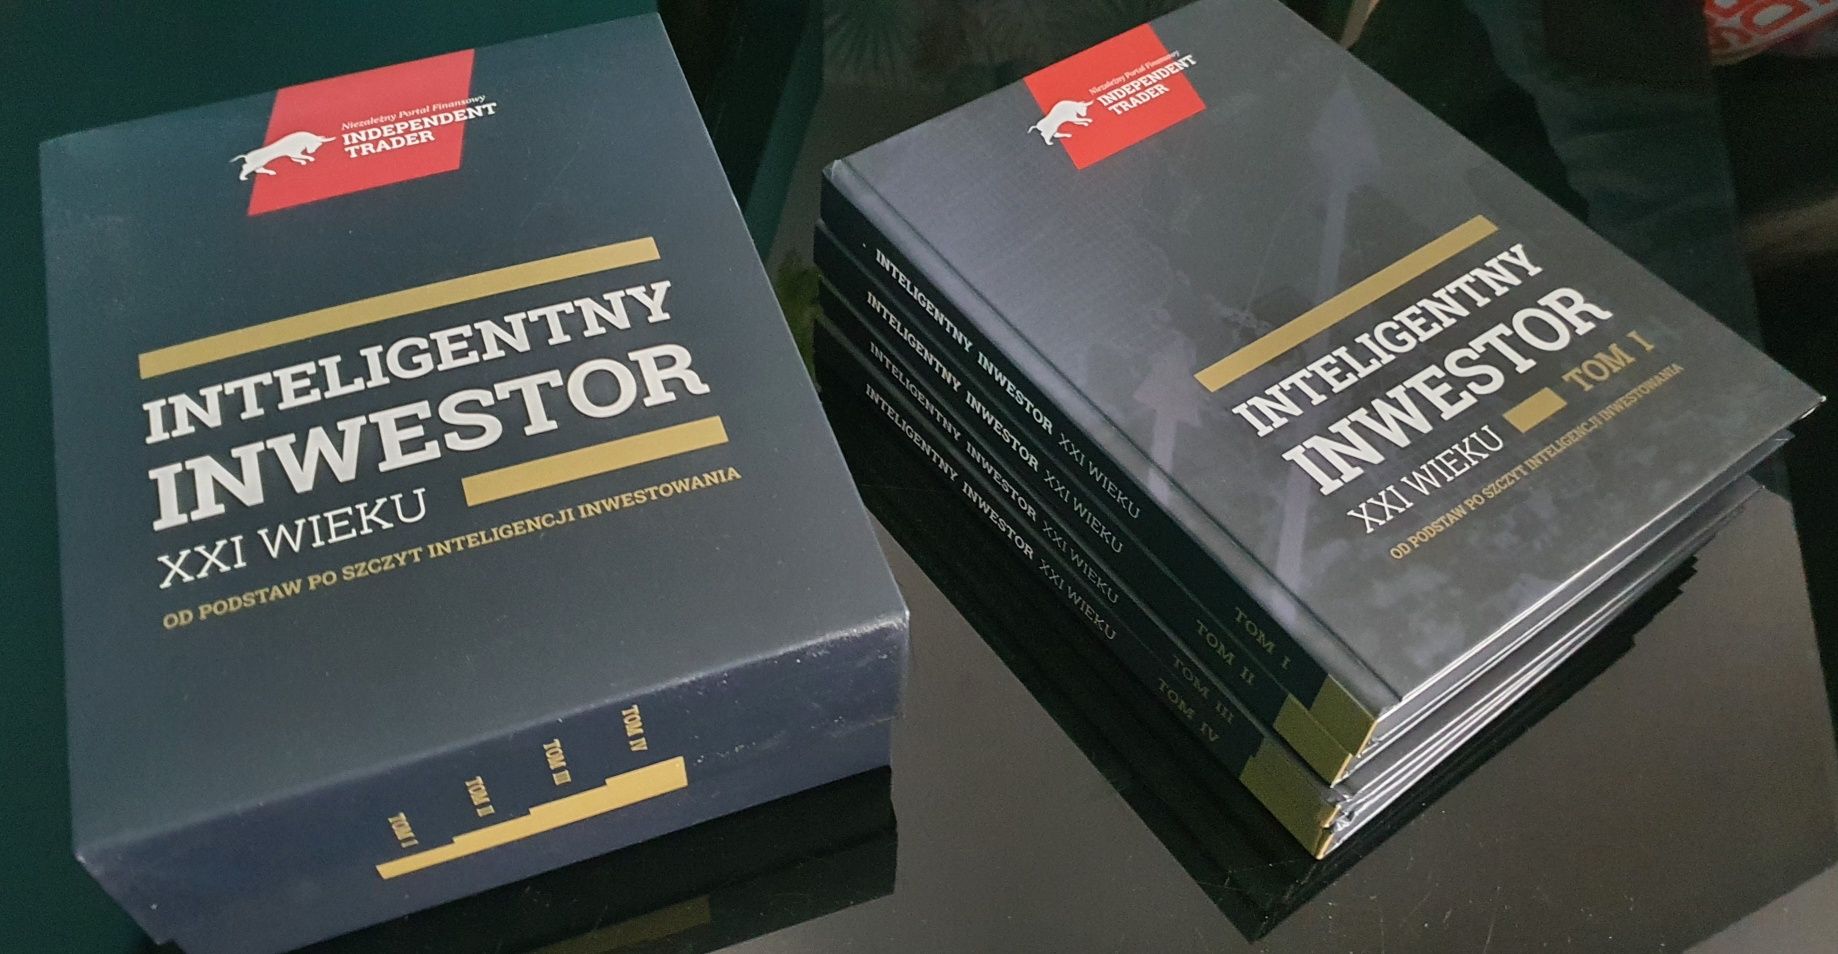 Inteligentny Inwestor XXI Wieku 4 Tomy - Trader21 ksiażka